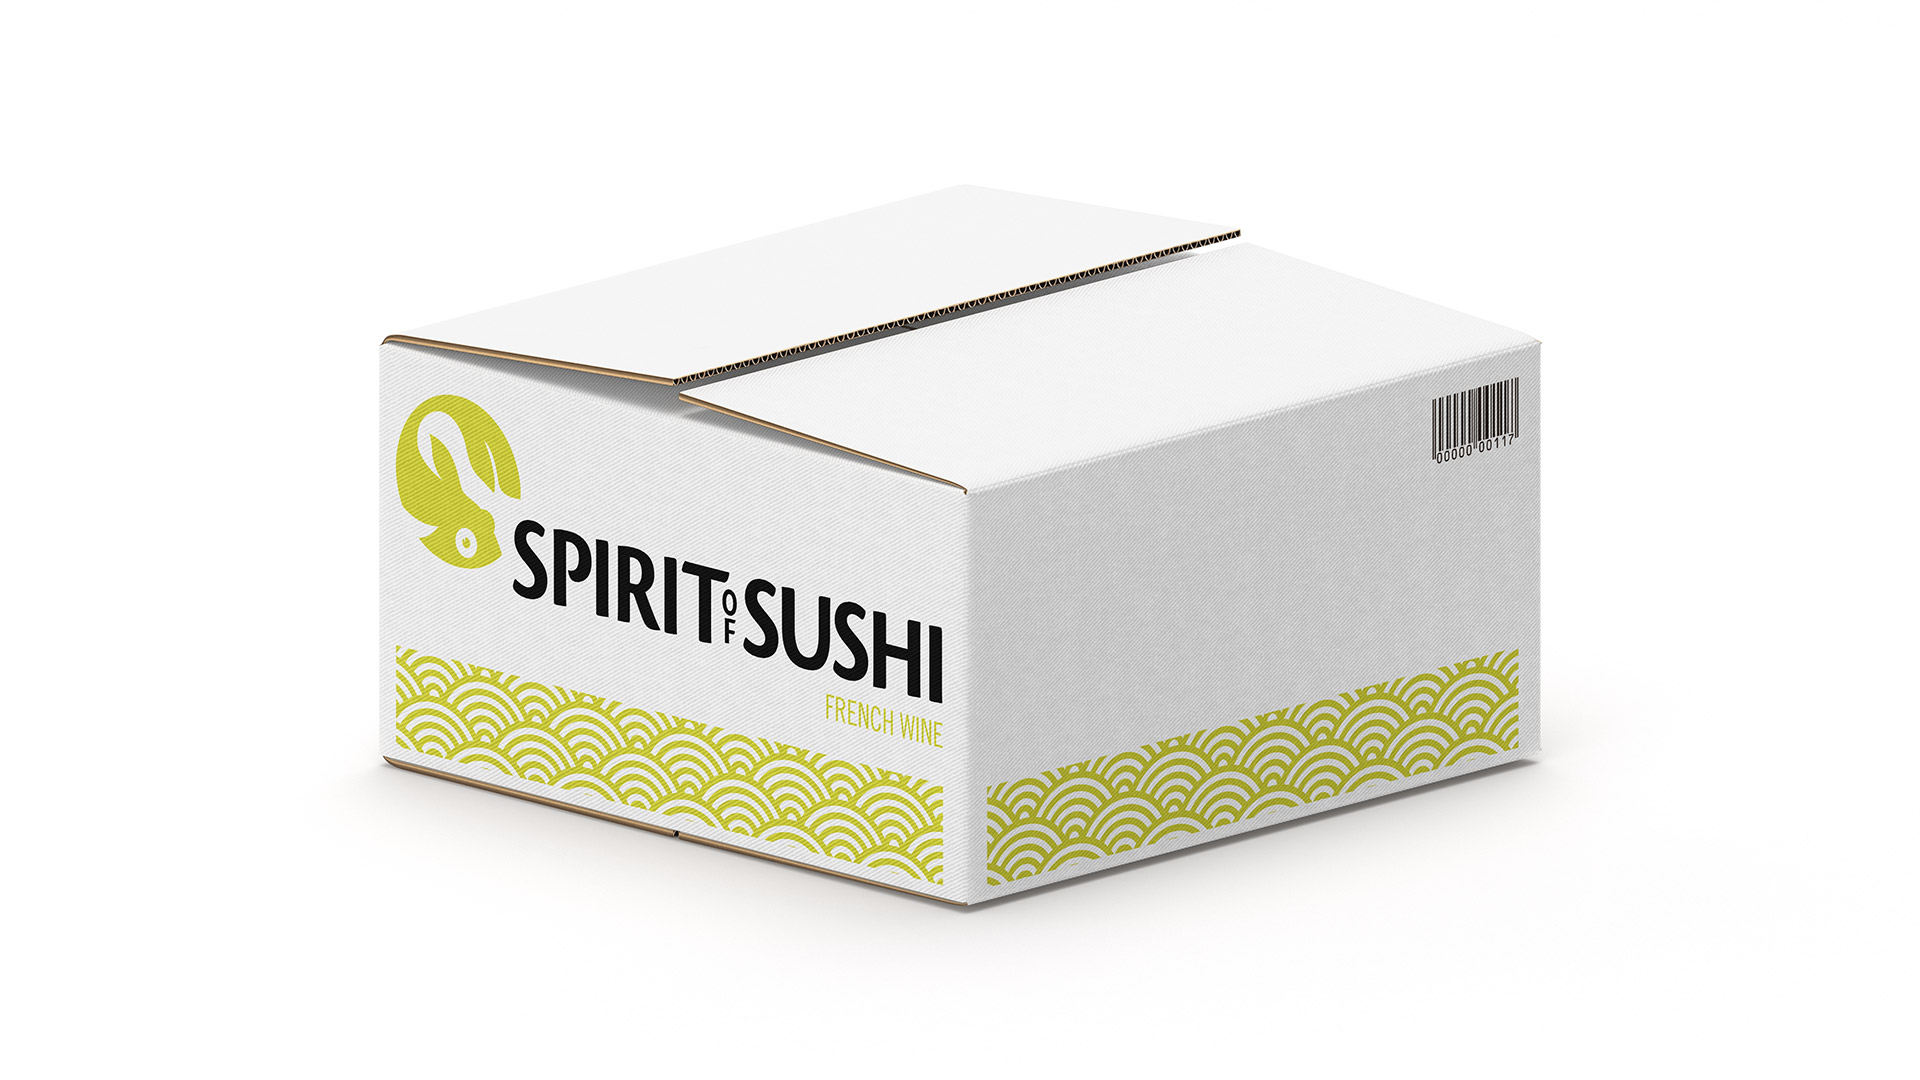 Spirit of sushi